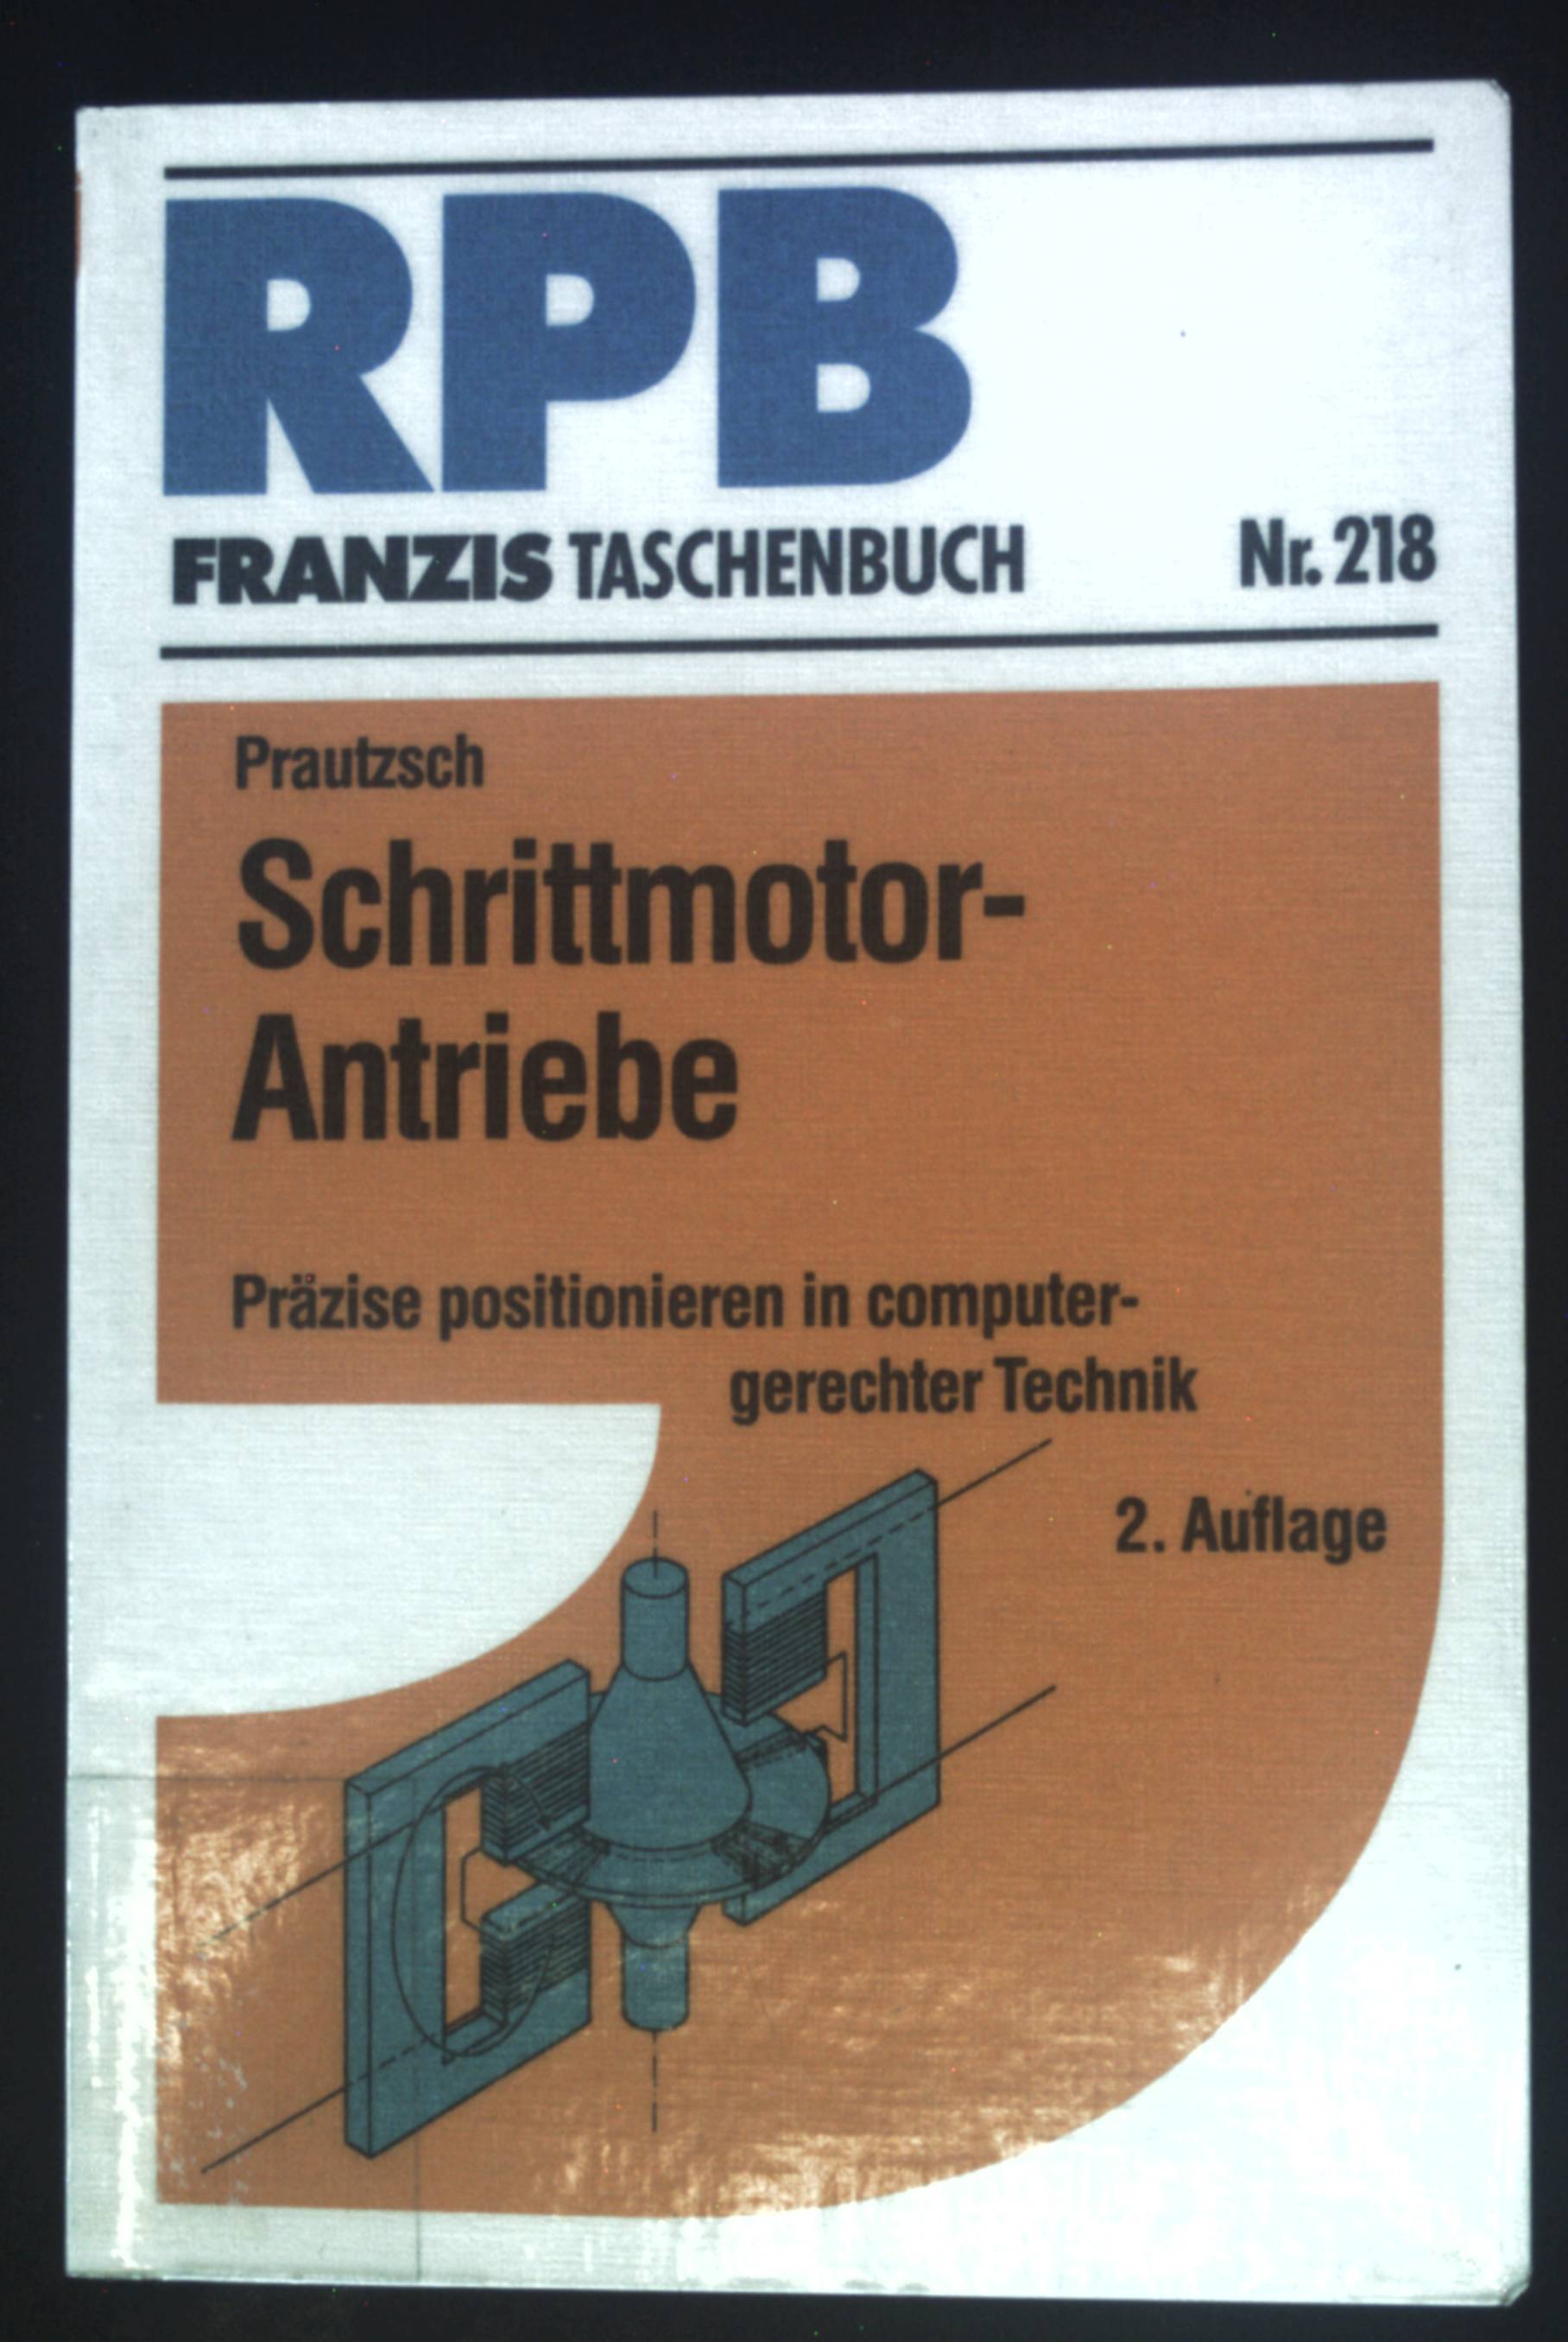 Schrittmotor-Antriebe : präzise positionieren in computergerechter Technik. RPB-Electronic-Taschenbücher ; Nr. 218 - Prautzsch, Friedrich